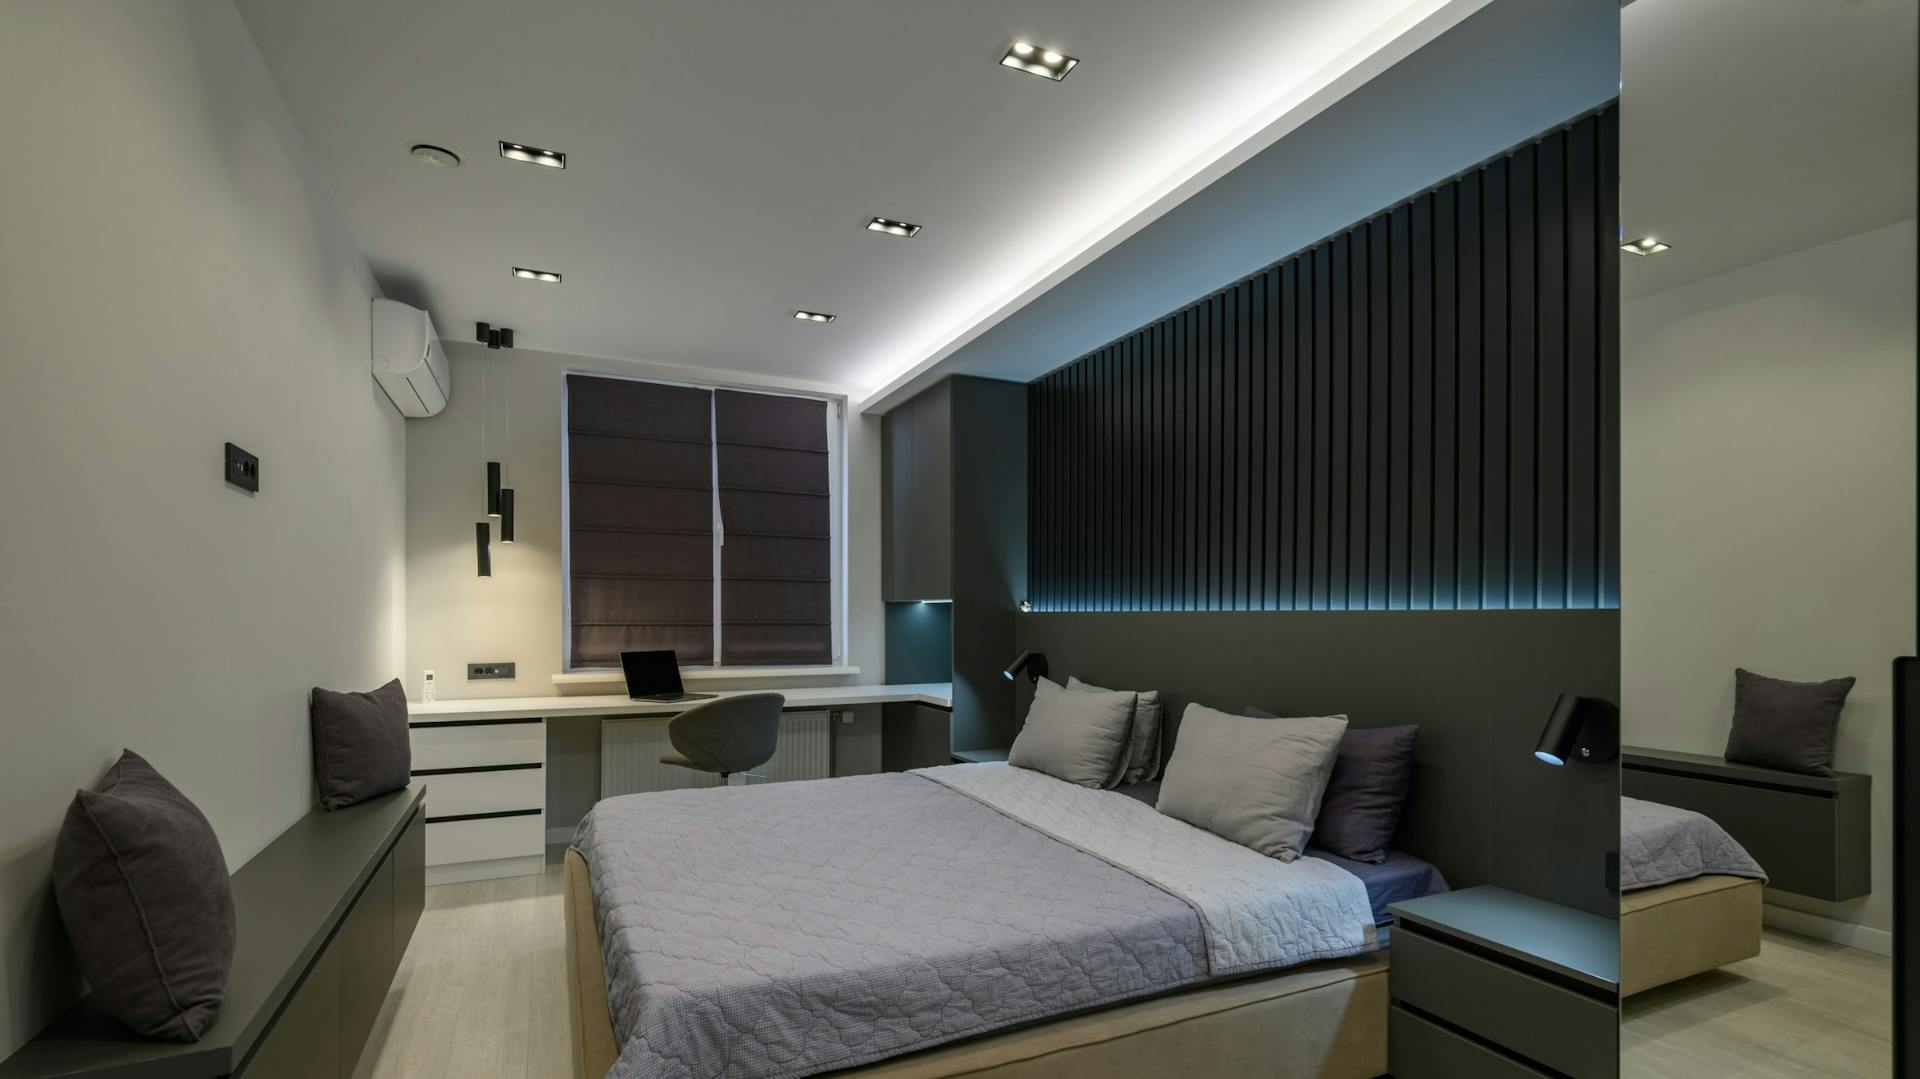 Ein Bett mit einer LED-Rückwand